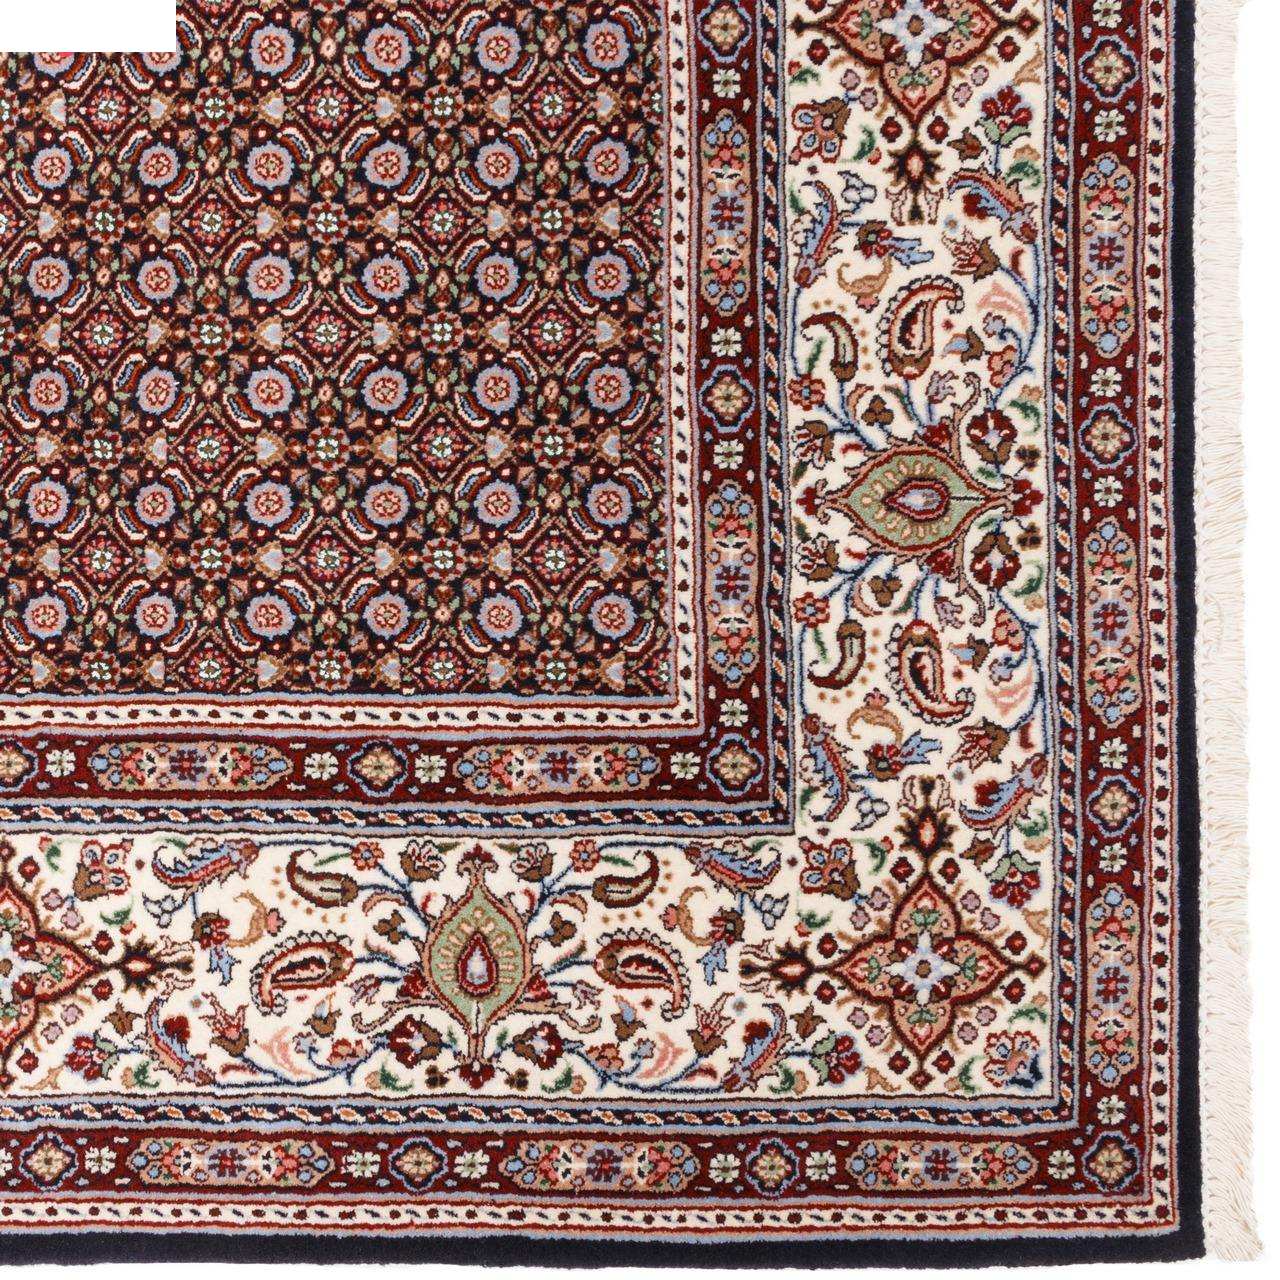 Six meter handmade carpet by Persia, code 174513